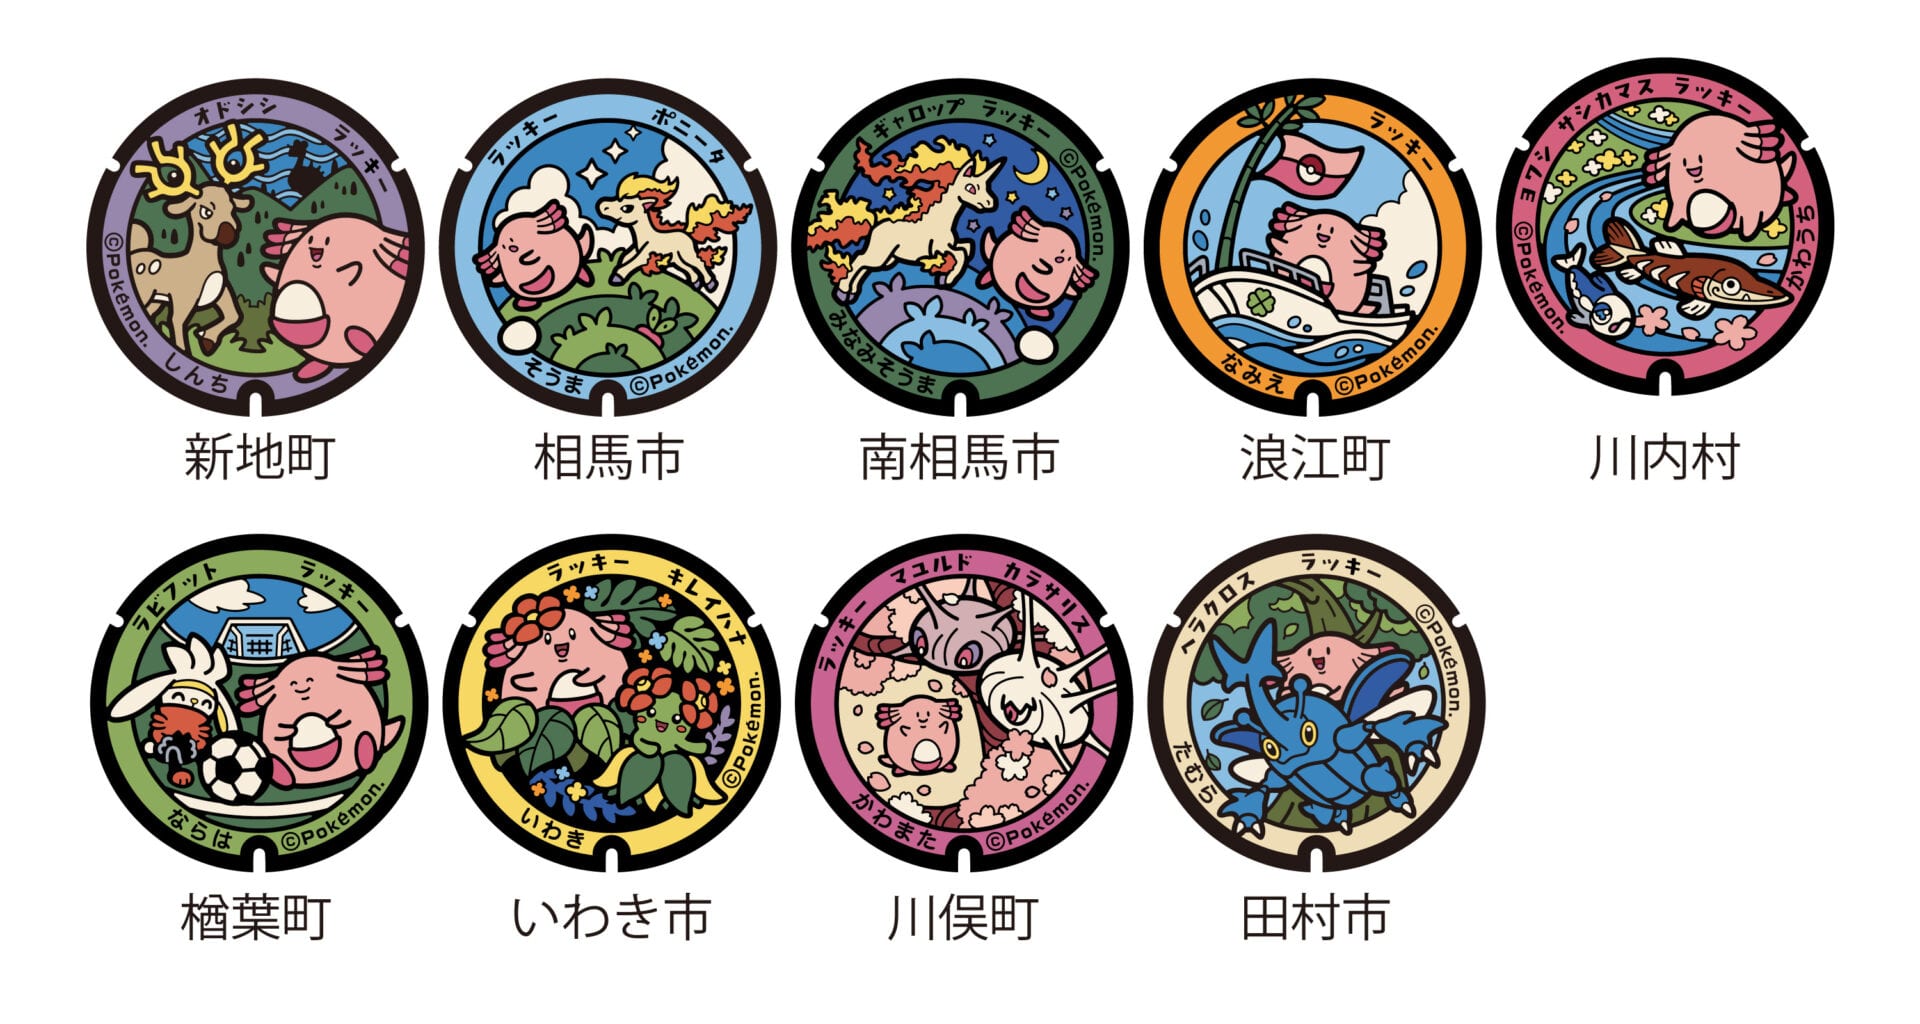 pokemon, tapa de poke, tapas de alcantarilla, fukushima, japón